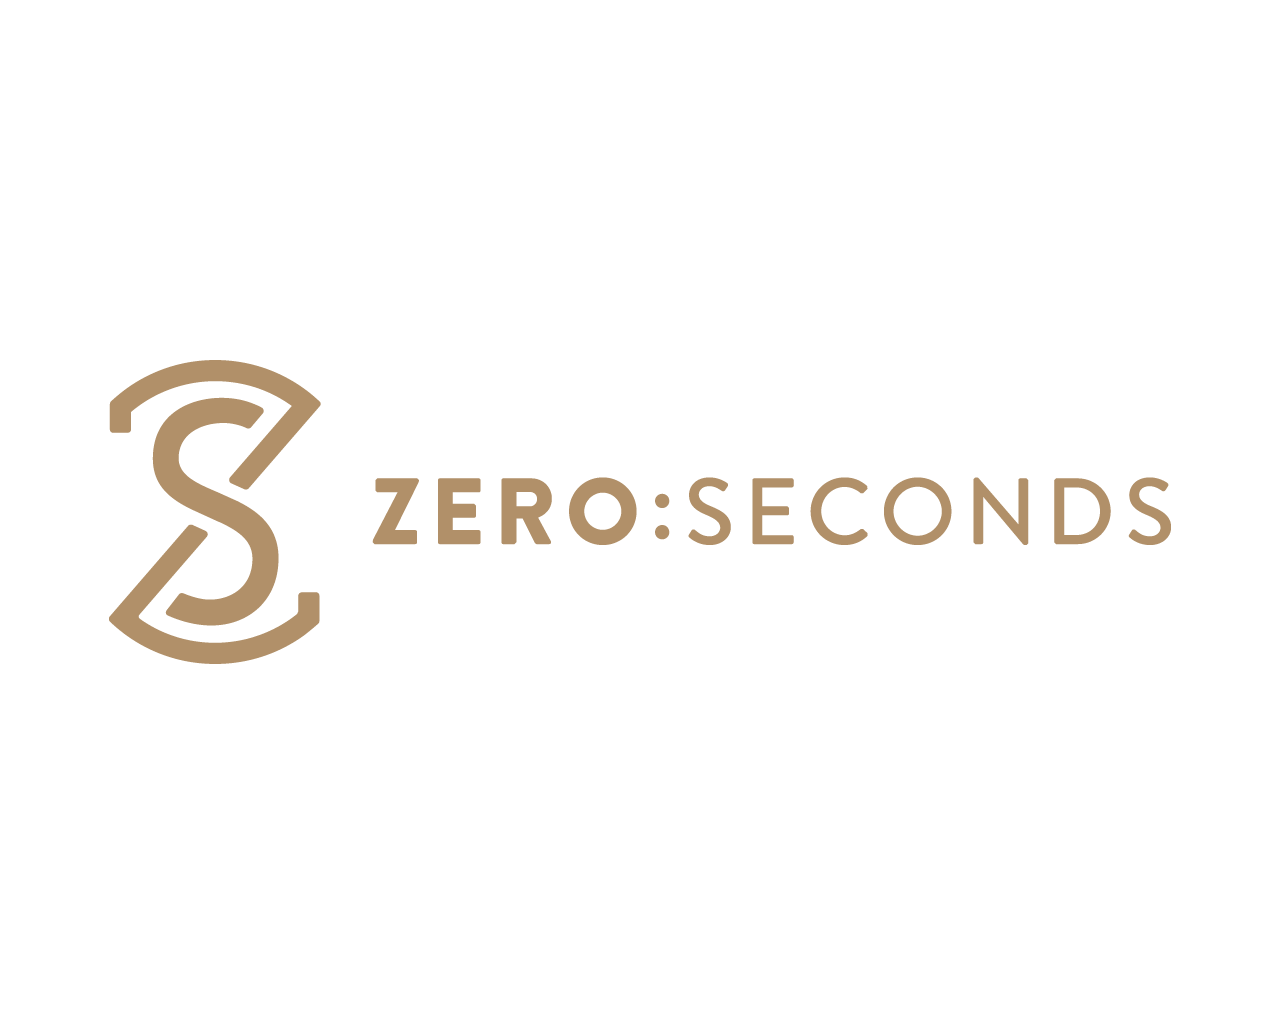 ZERO:SECONDS